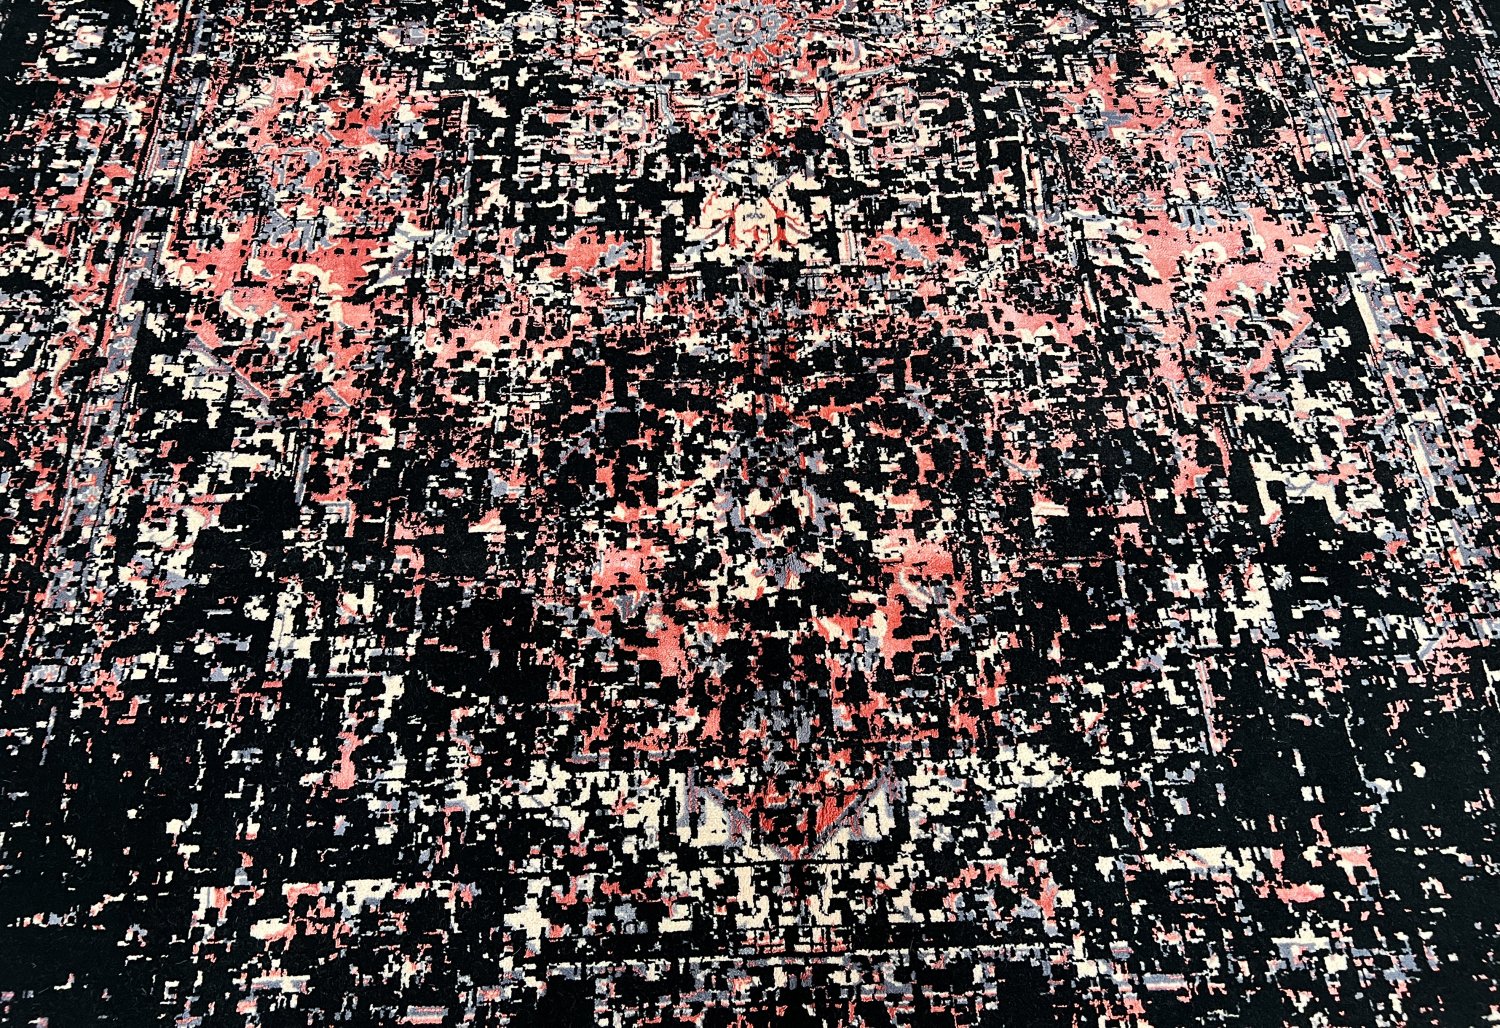 فرش پشمی ماشینی طبیعی و ارگانیک کد 0020 - زمینه مشکی - حاشیه گلبهی